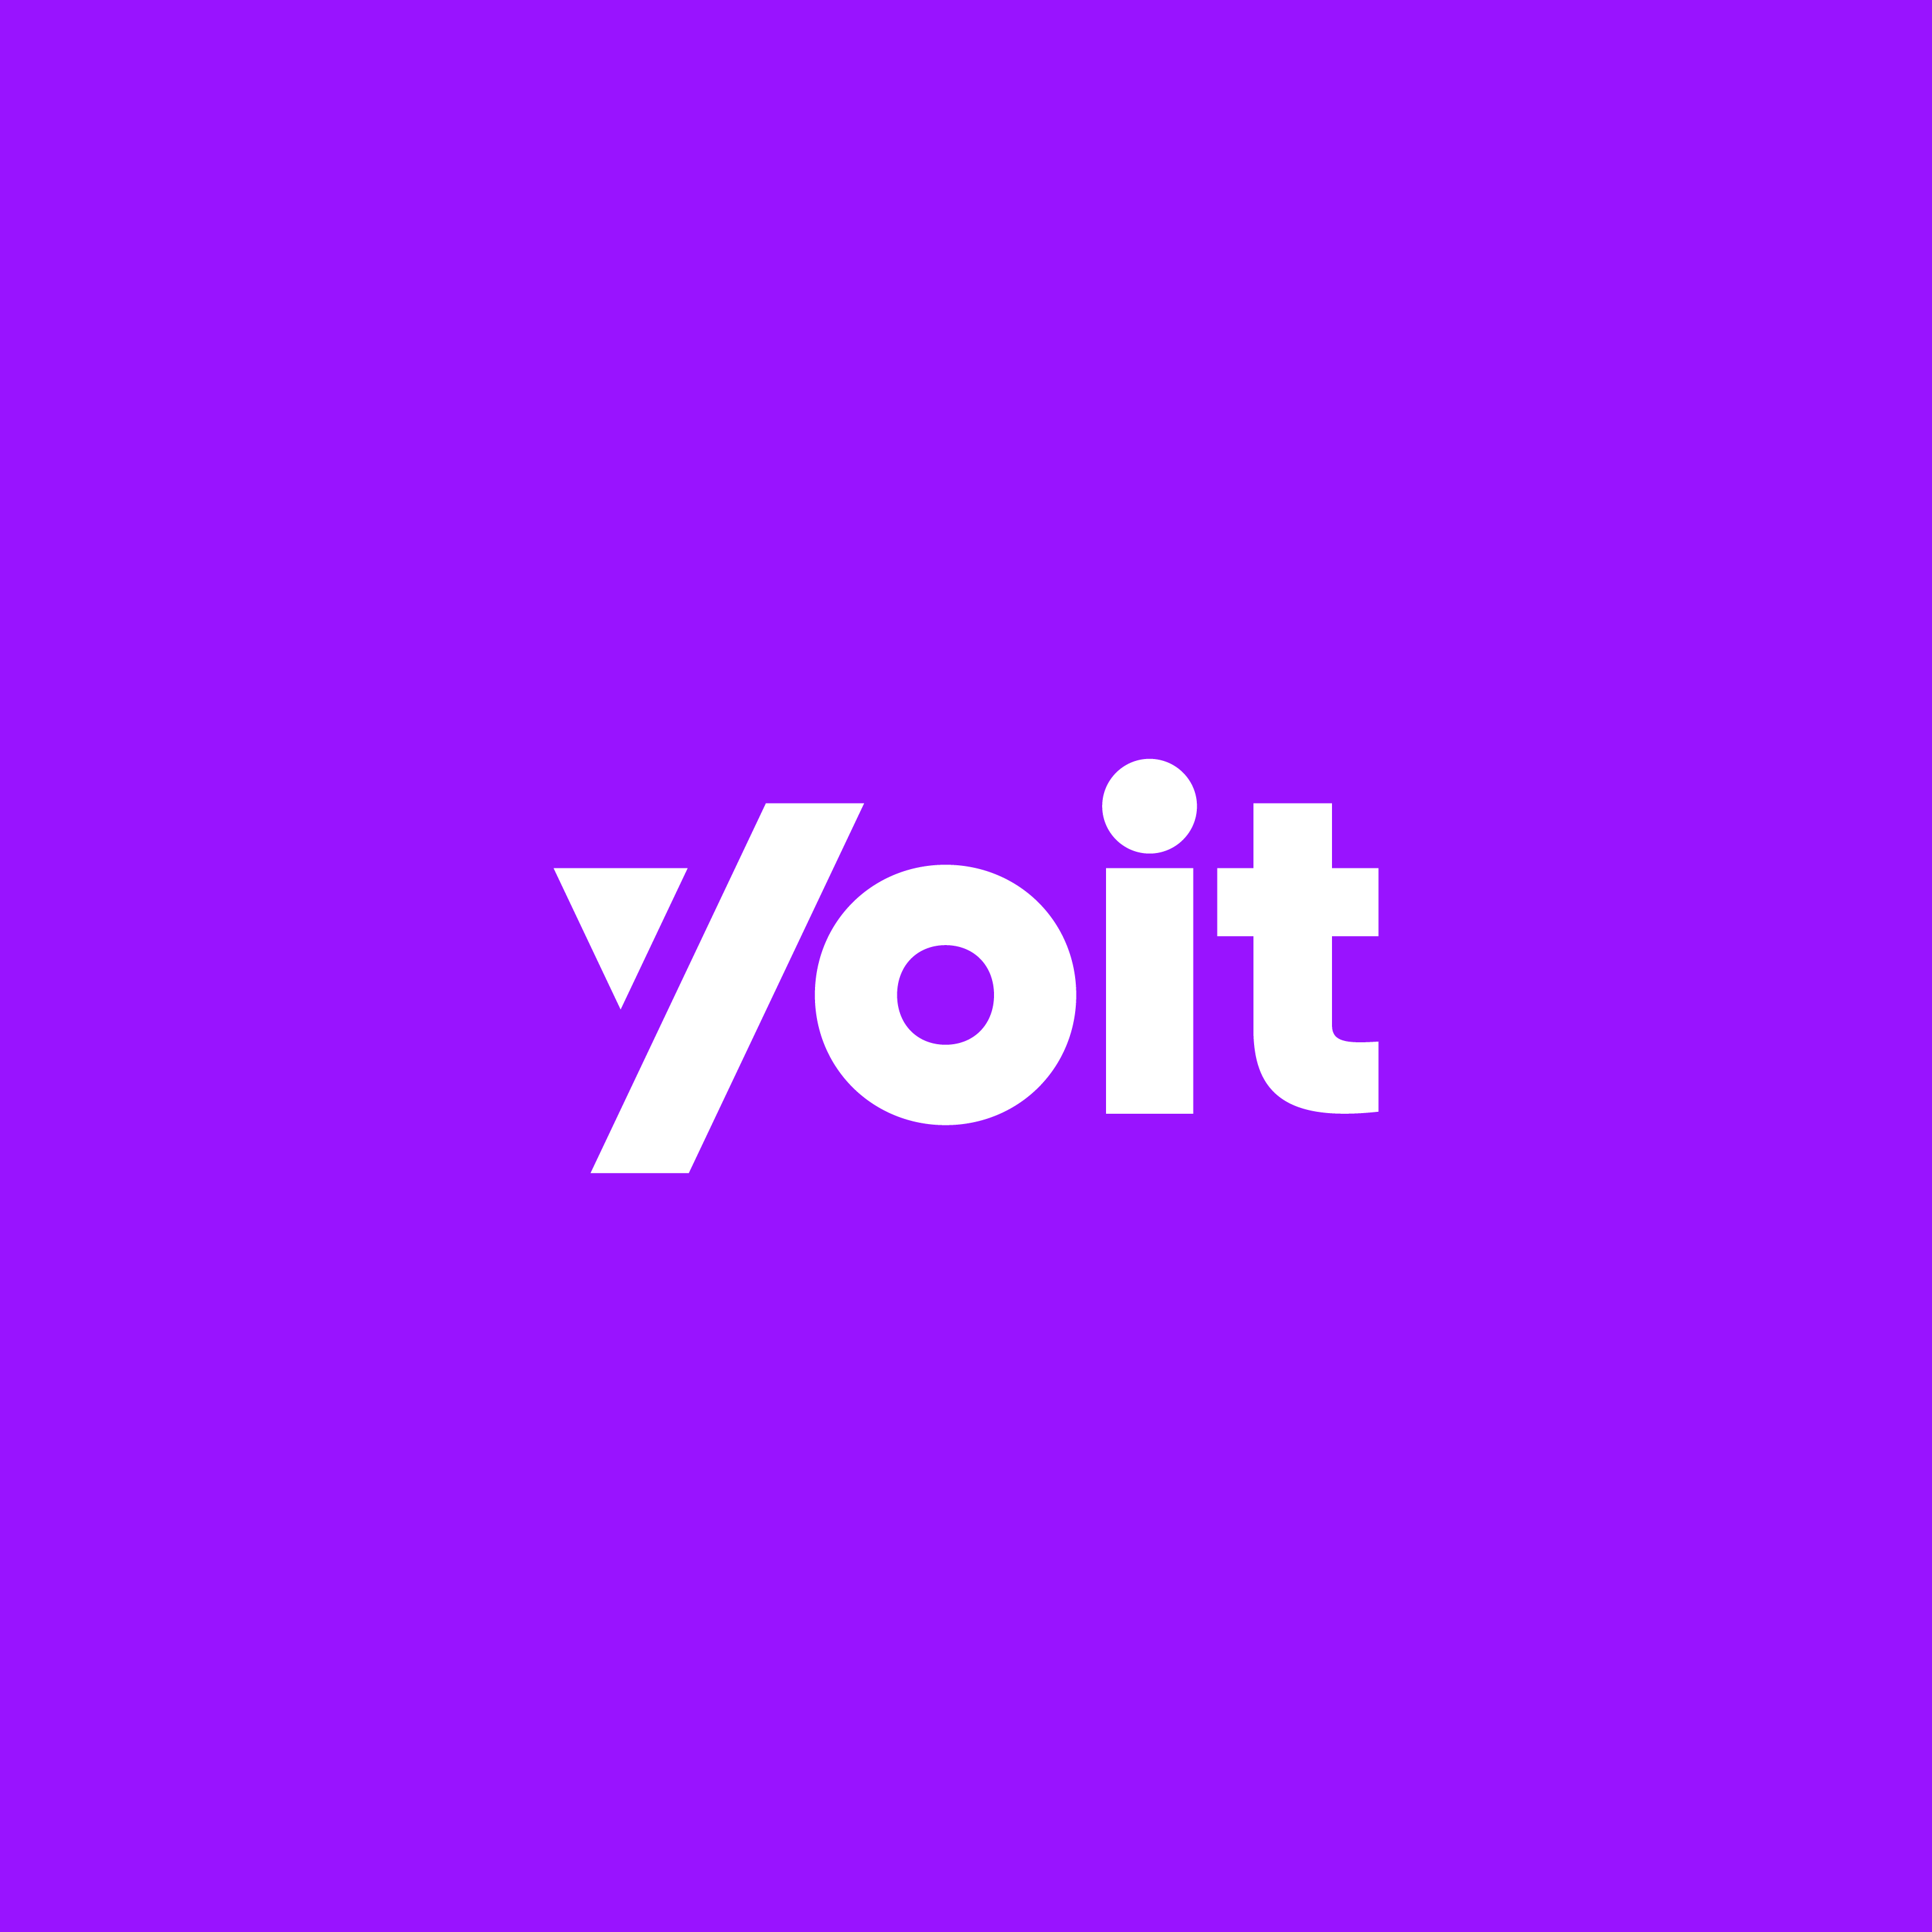 Yoit logo